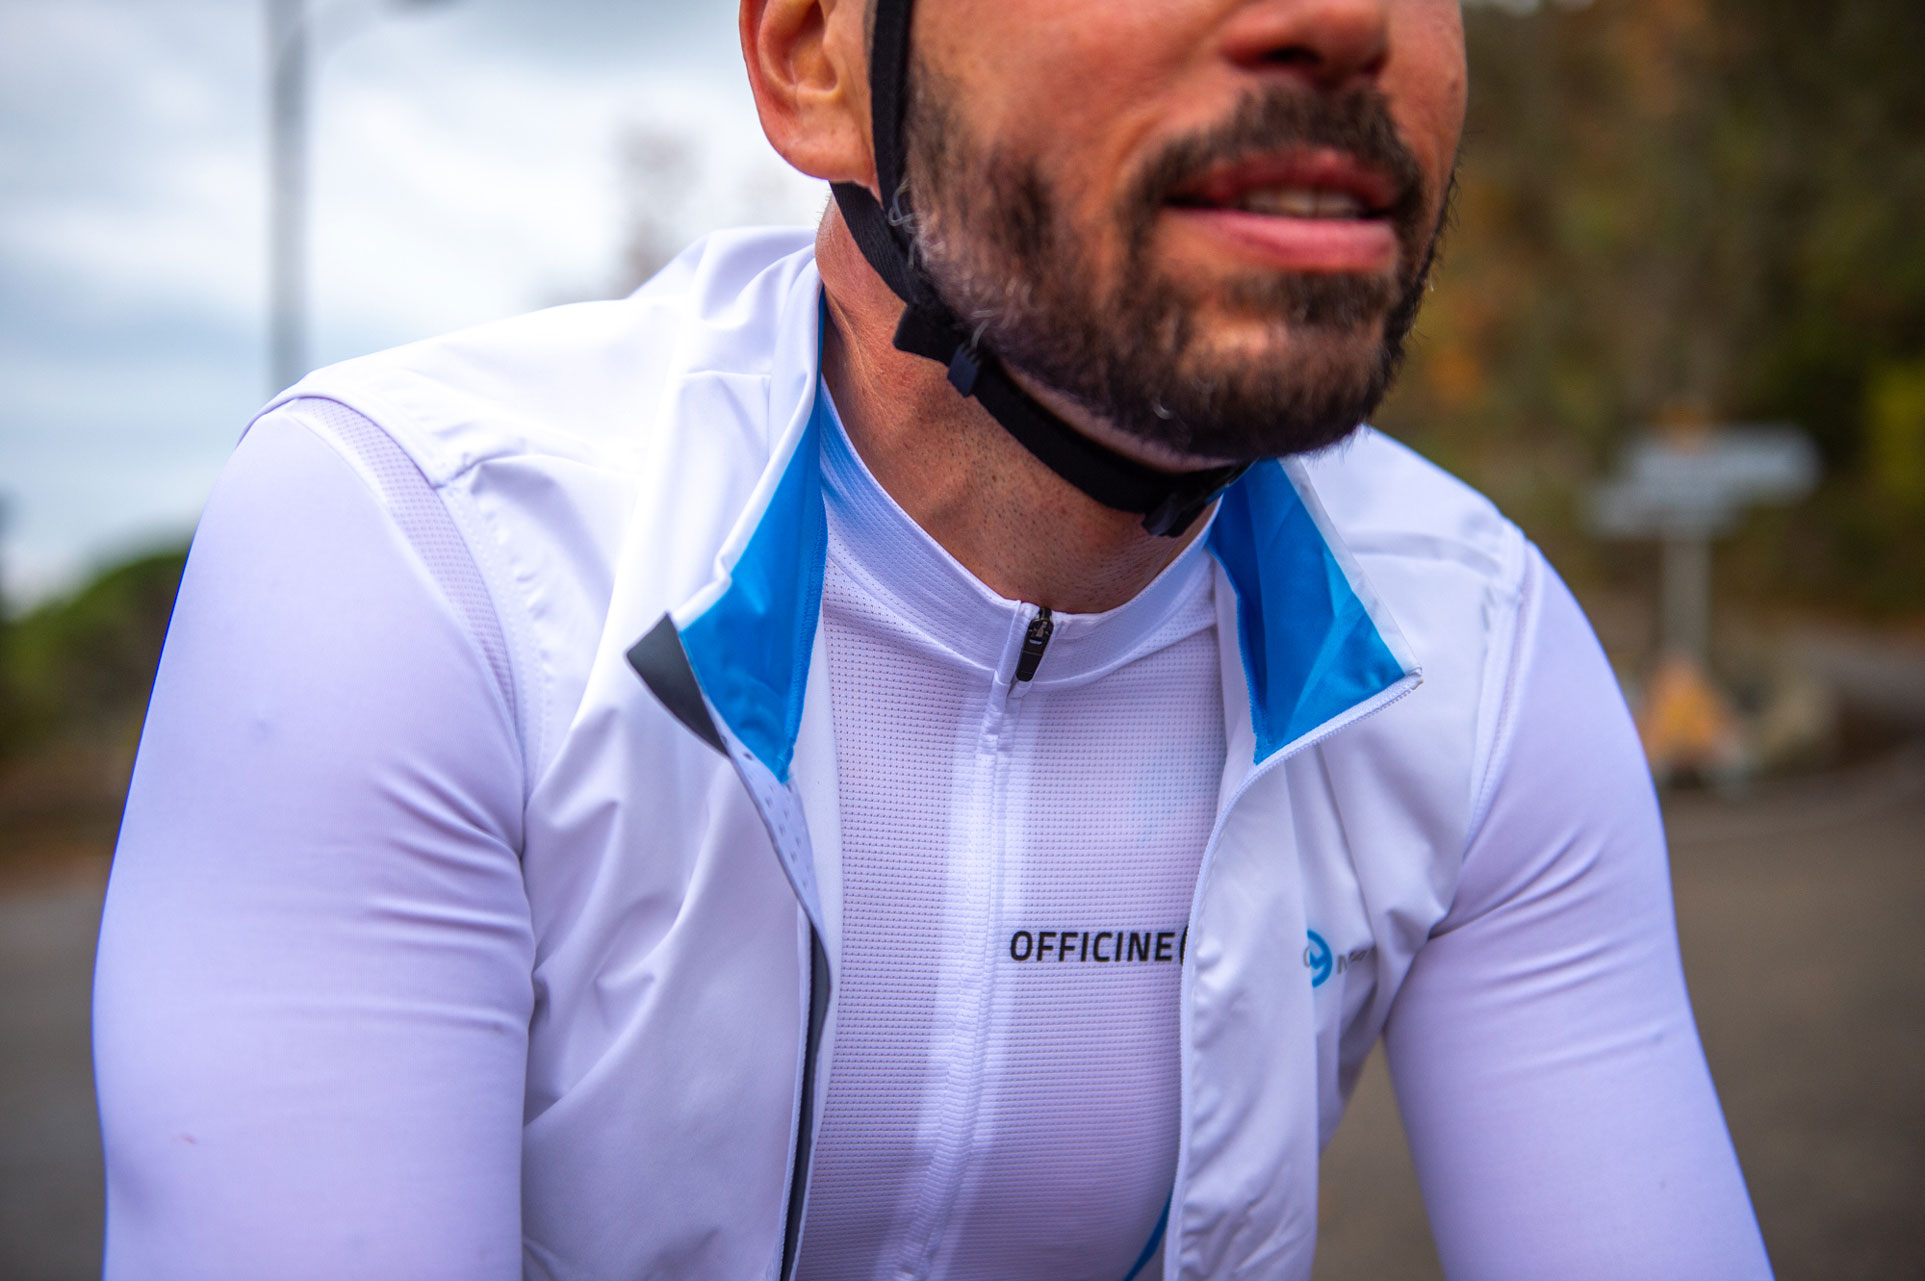 Abbigliamento Officine Mattio, capi tecnici per ciclismo, produzione italiana, abbigliamento uomo maglia bianca